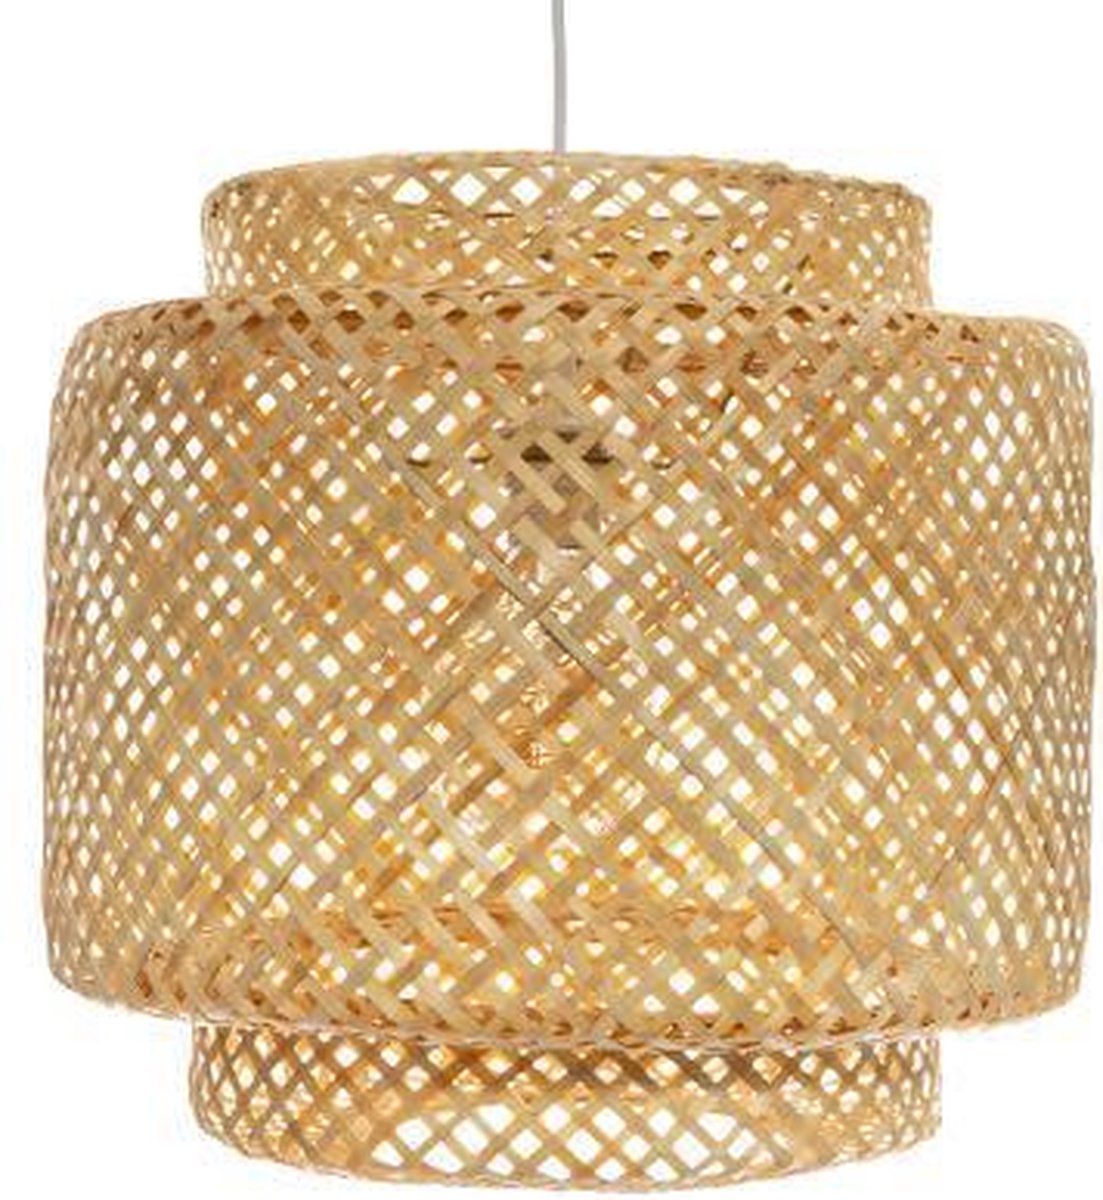 Hanglamp Gevlochten Bamboe - Handgeweven - Verlichting - Rotan - Bohemian style - Voor woonkamer, eetkamer & slaapkamer - Ø40 cm